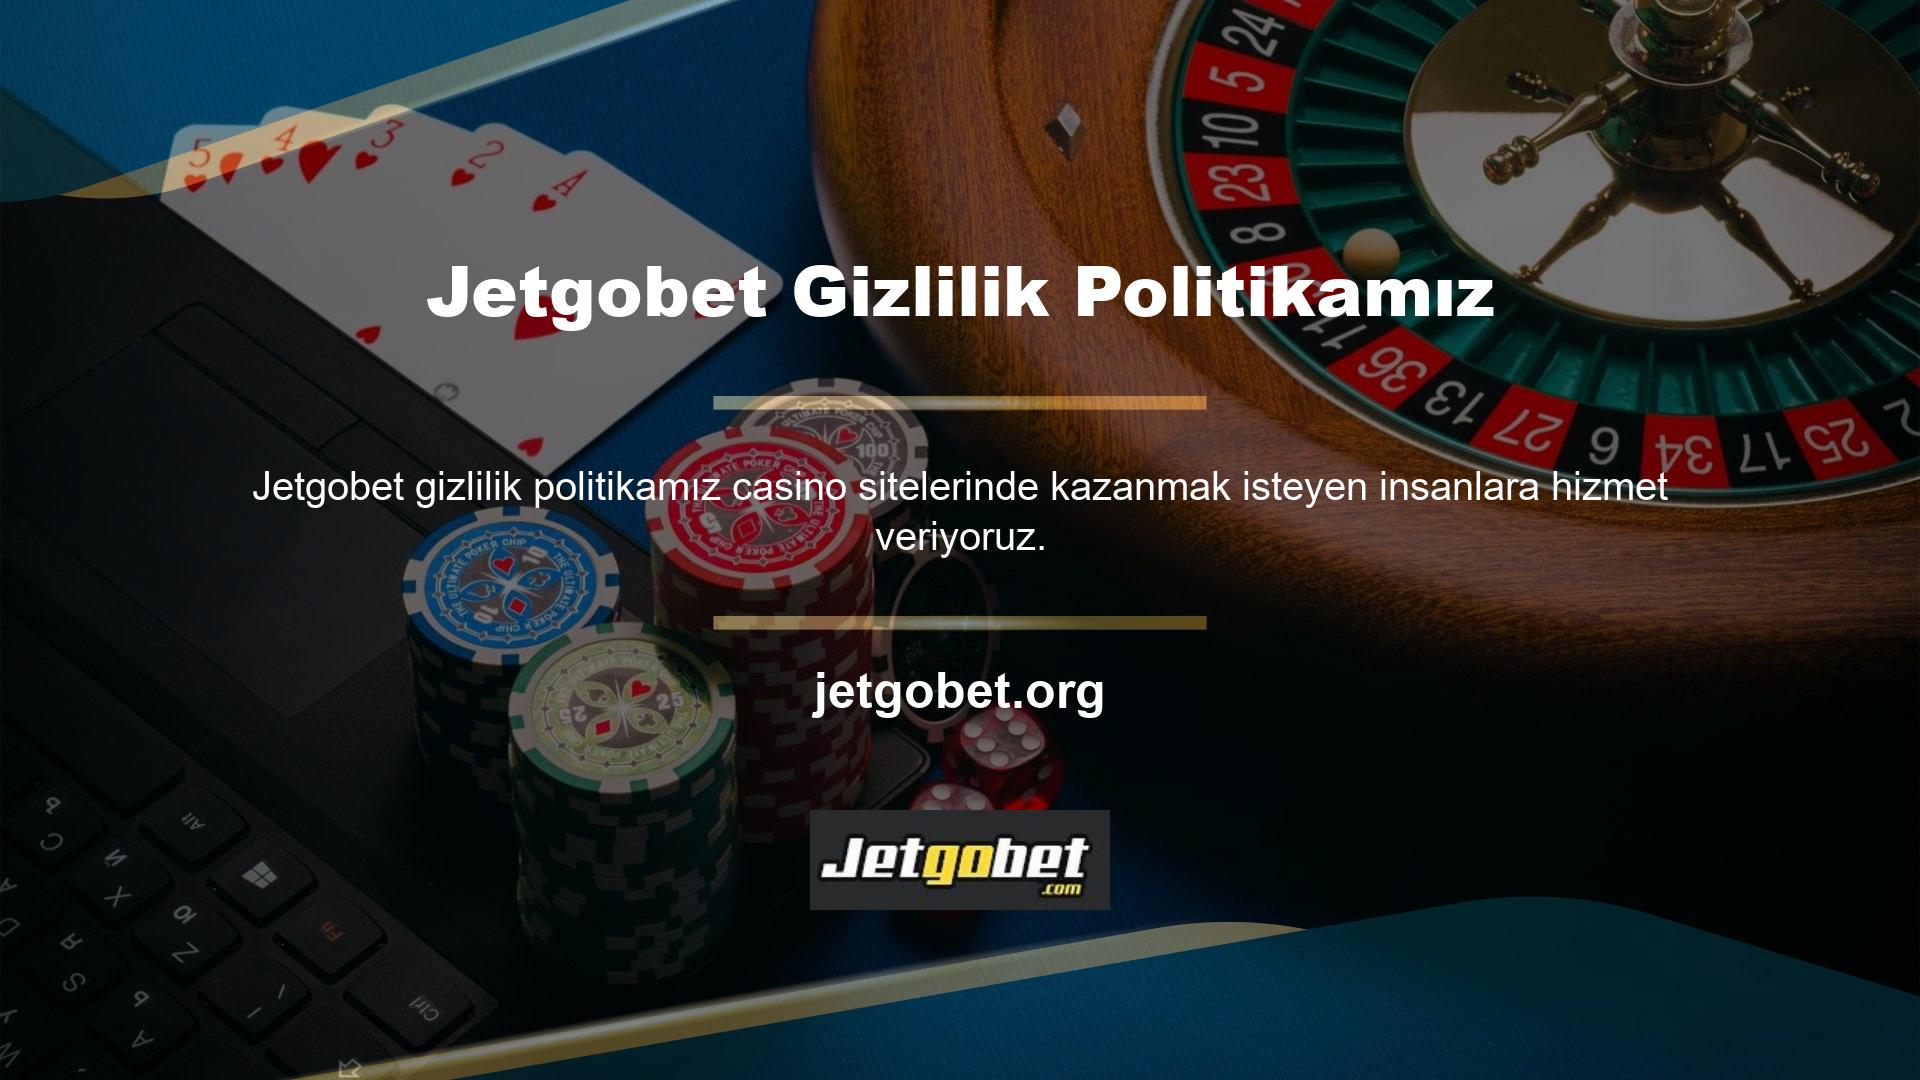 Türkiye'de casino yasak olduğu için yabancı kullanıcılara bahis yatırımı sunuyoruz